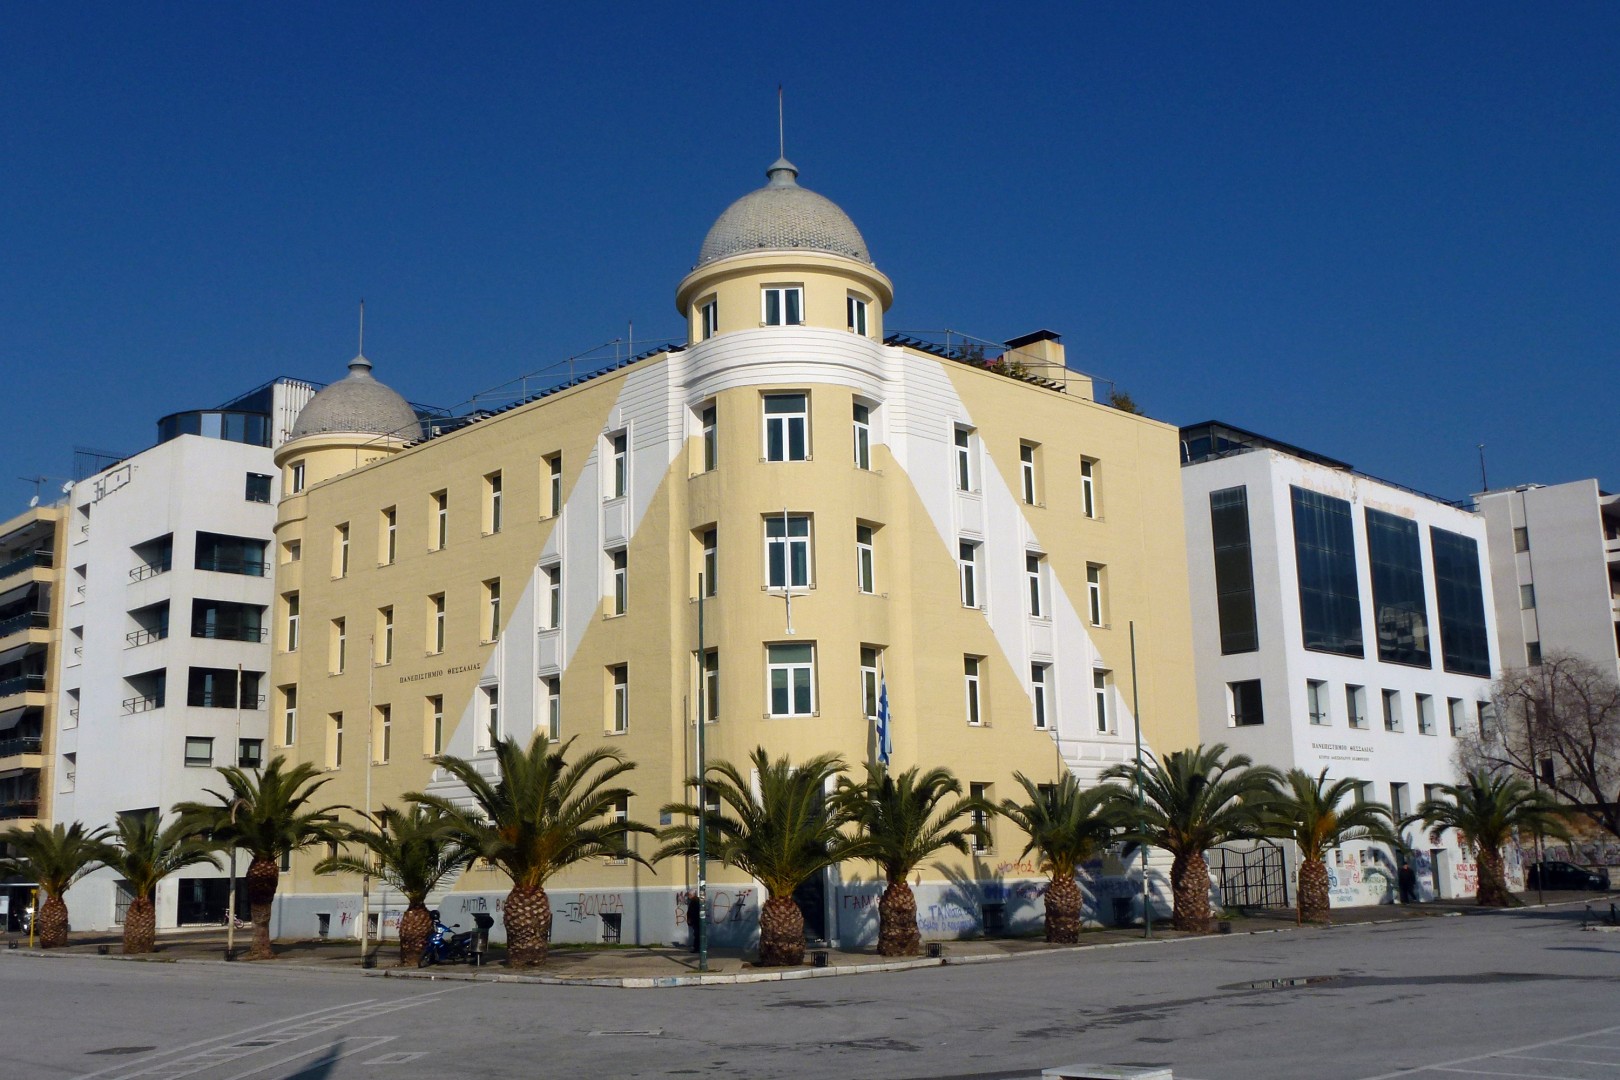 Έκτακτη επιχορήγηση 1,1 εκατ. ευρώ στο Πανεπιστήμιο Θεσσαλίας